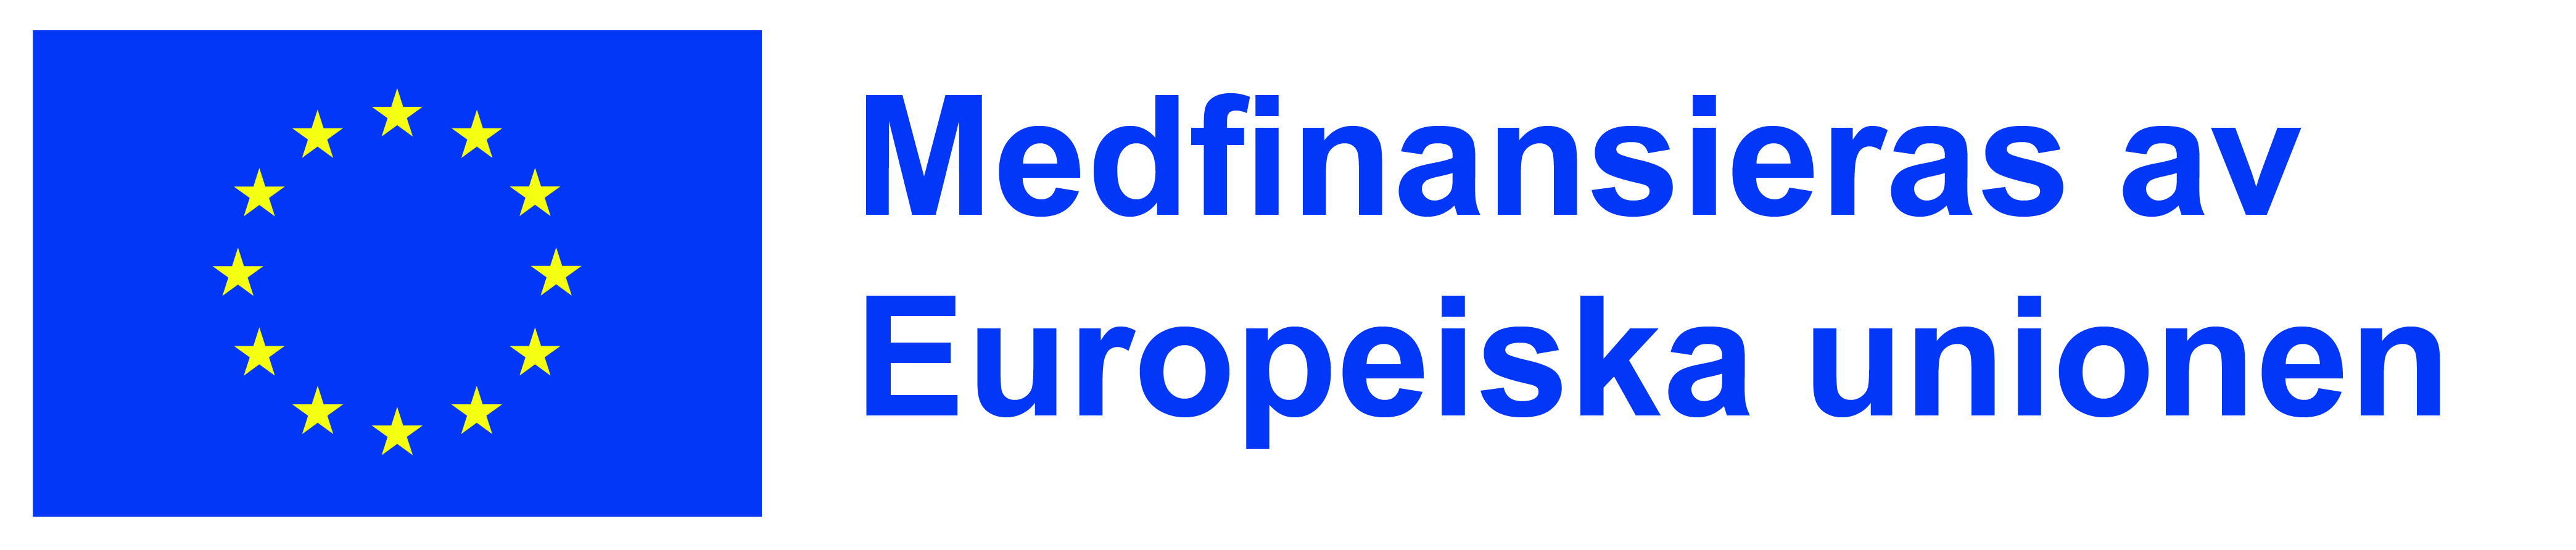 Banner med EU logga och text Medfinansieras av Euripeiska unionen